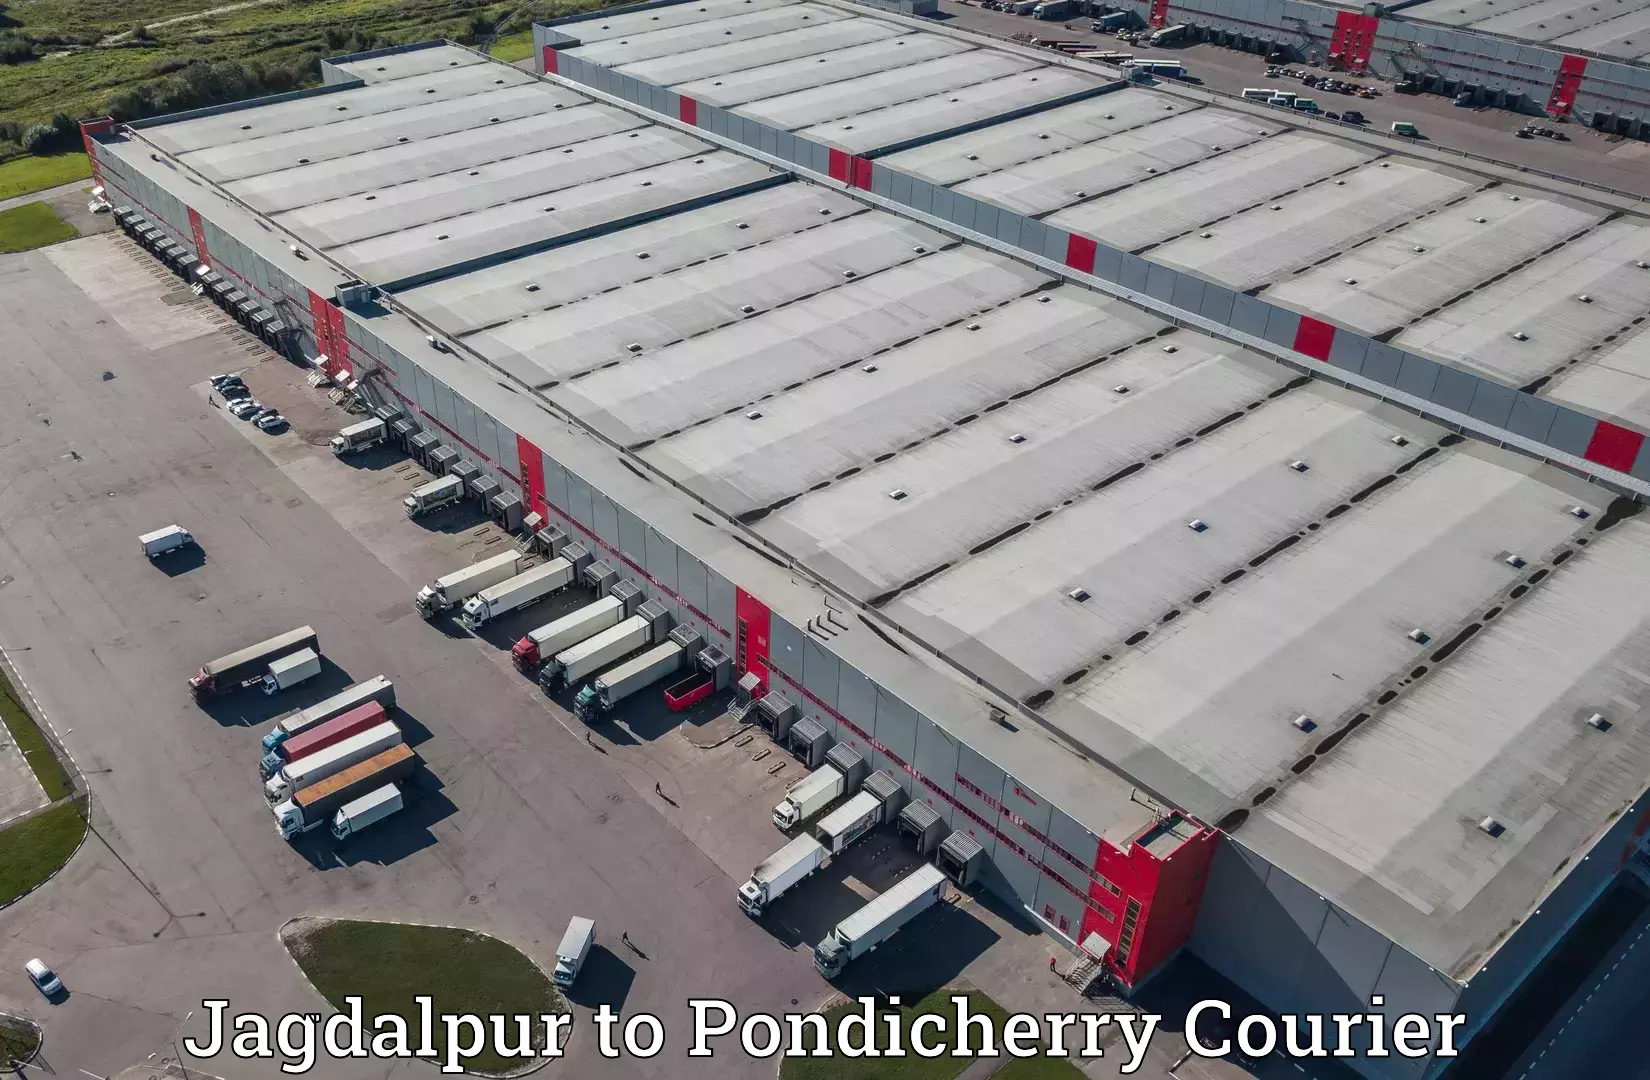 Next-generation courier services Jagdalpur to Pondicherry